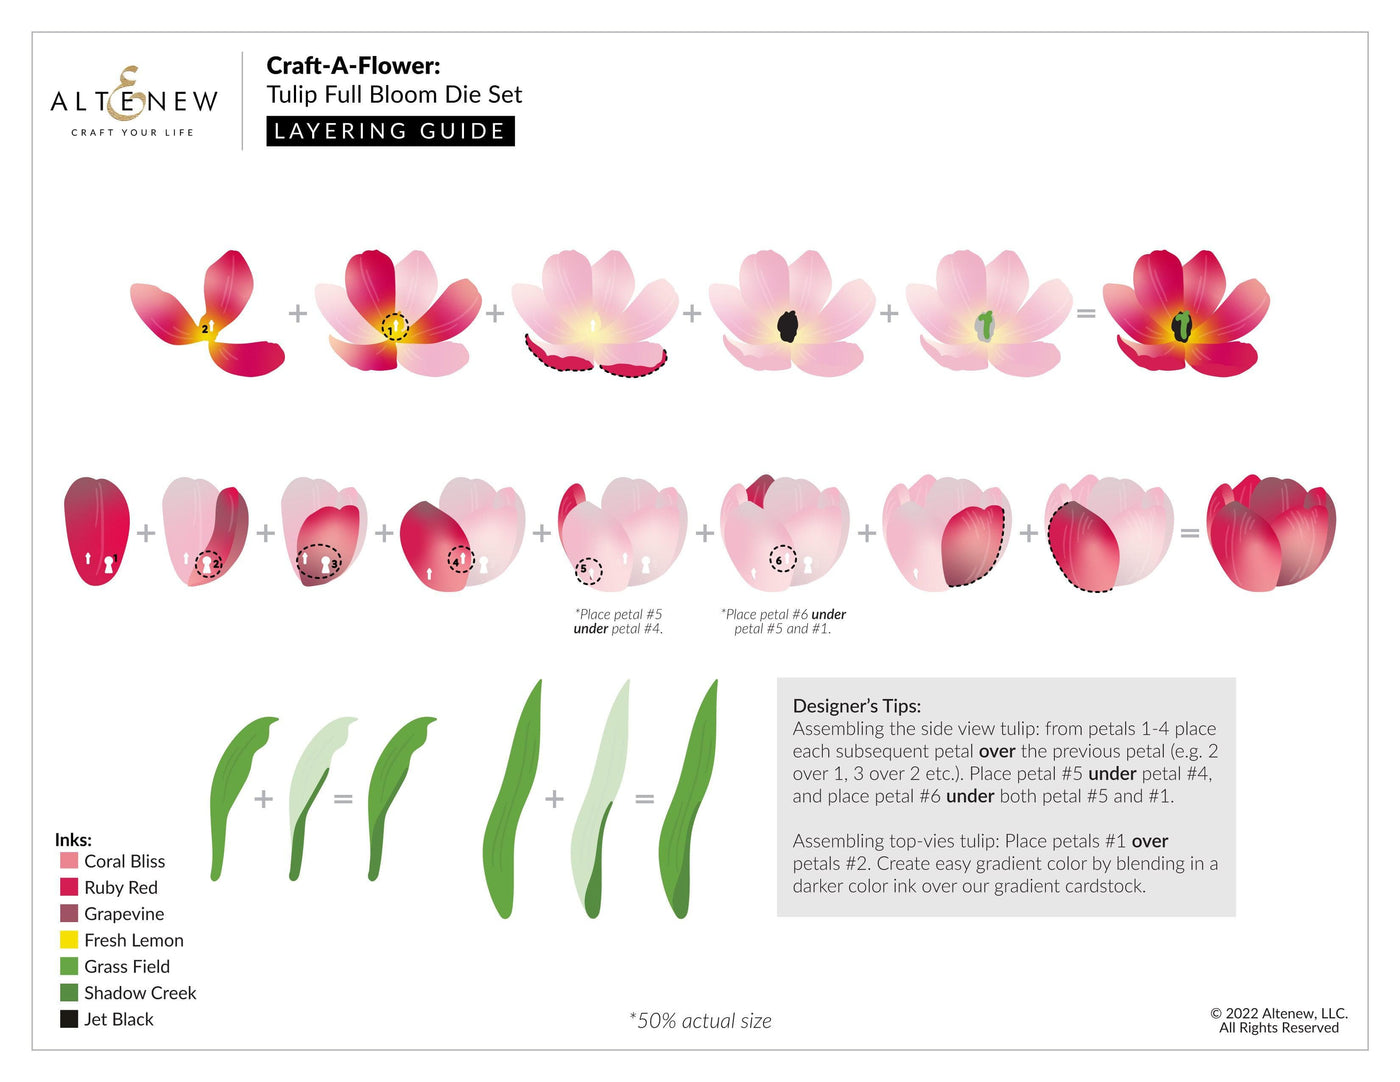 Altenew - Dies - Craft-A-Flower: Cape Marguerite Layering